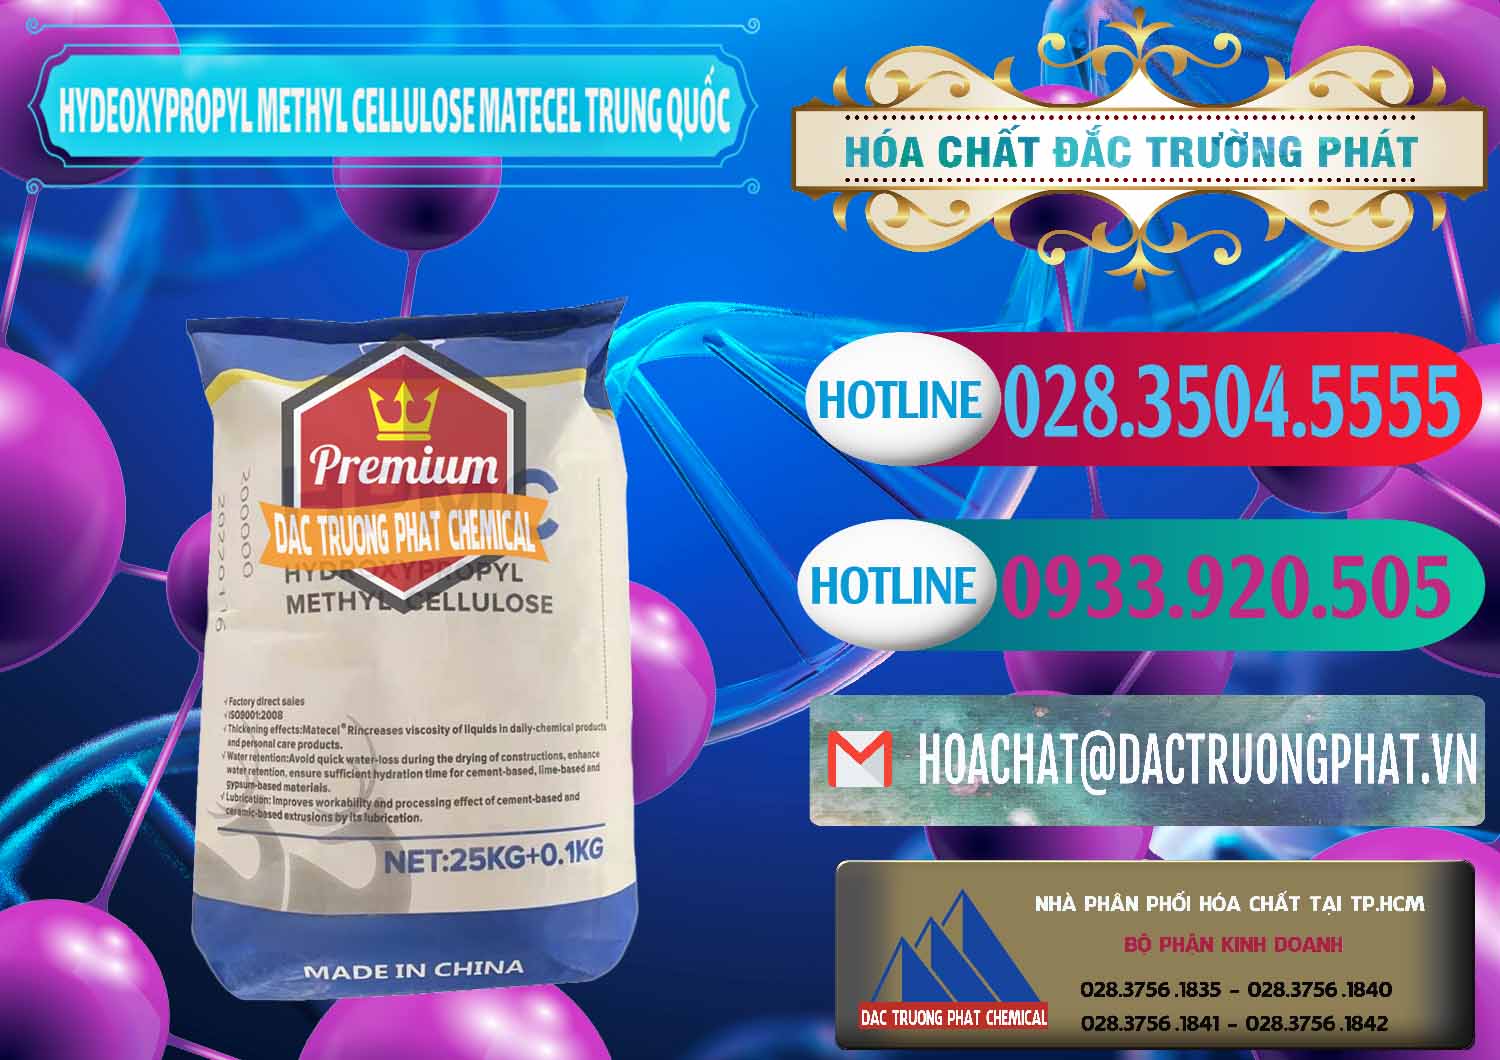 Nơi chuyên bán và cung ứng Chất Tạo Đặc HPMC - Hydroxypropyl Methyl Cellulose Matecel Trung Quốc China - 0396 - Cty nhập khẩu - phân phối hóa chất tại TP.HCM - truongphat.vn